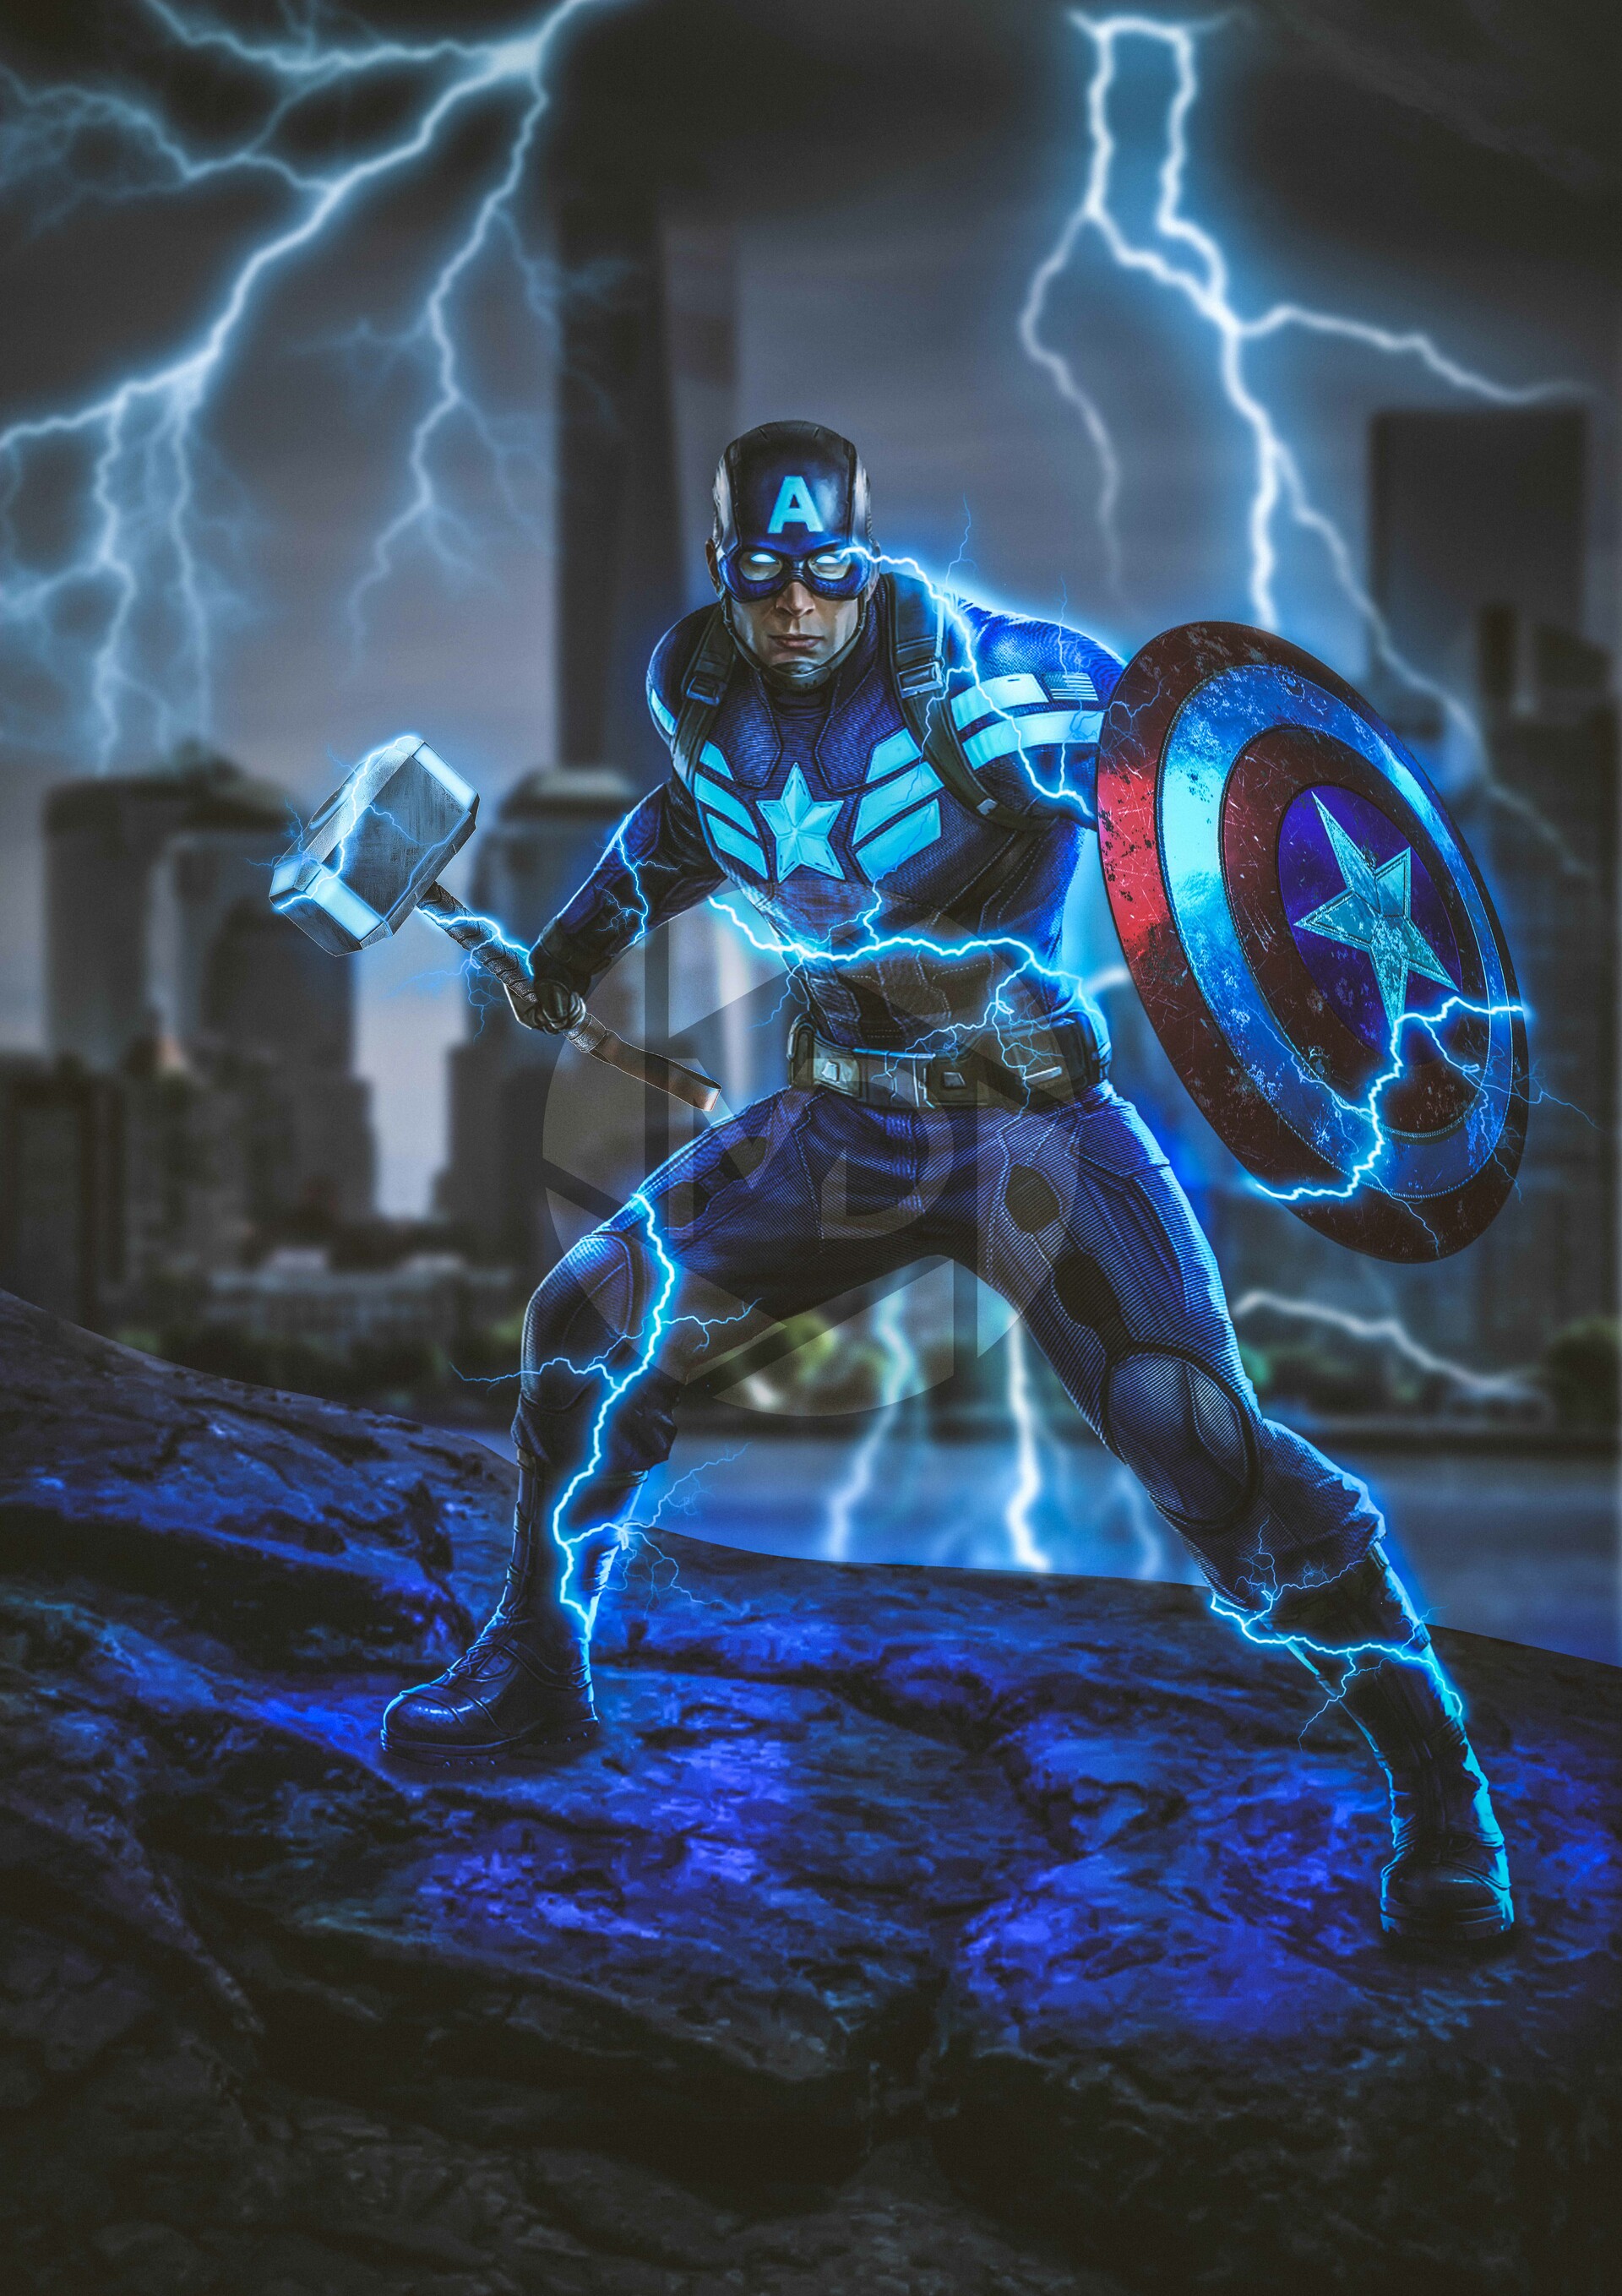 ArtStation - Avengers Endgame - Captain America